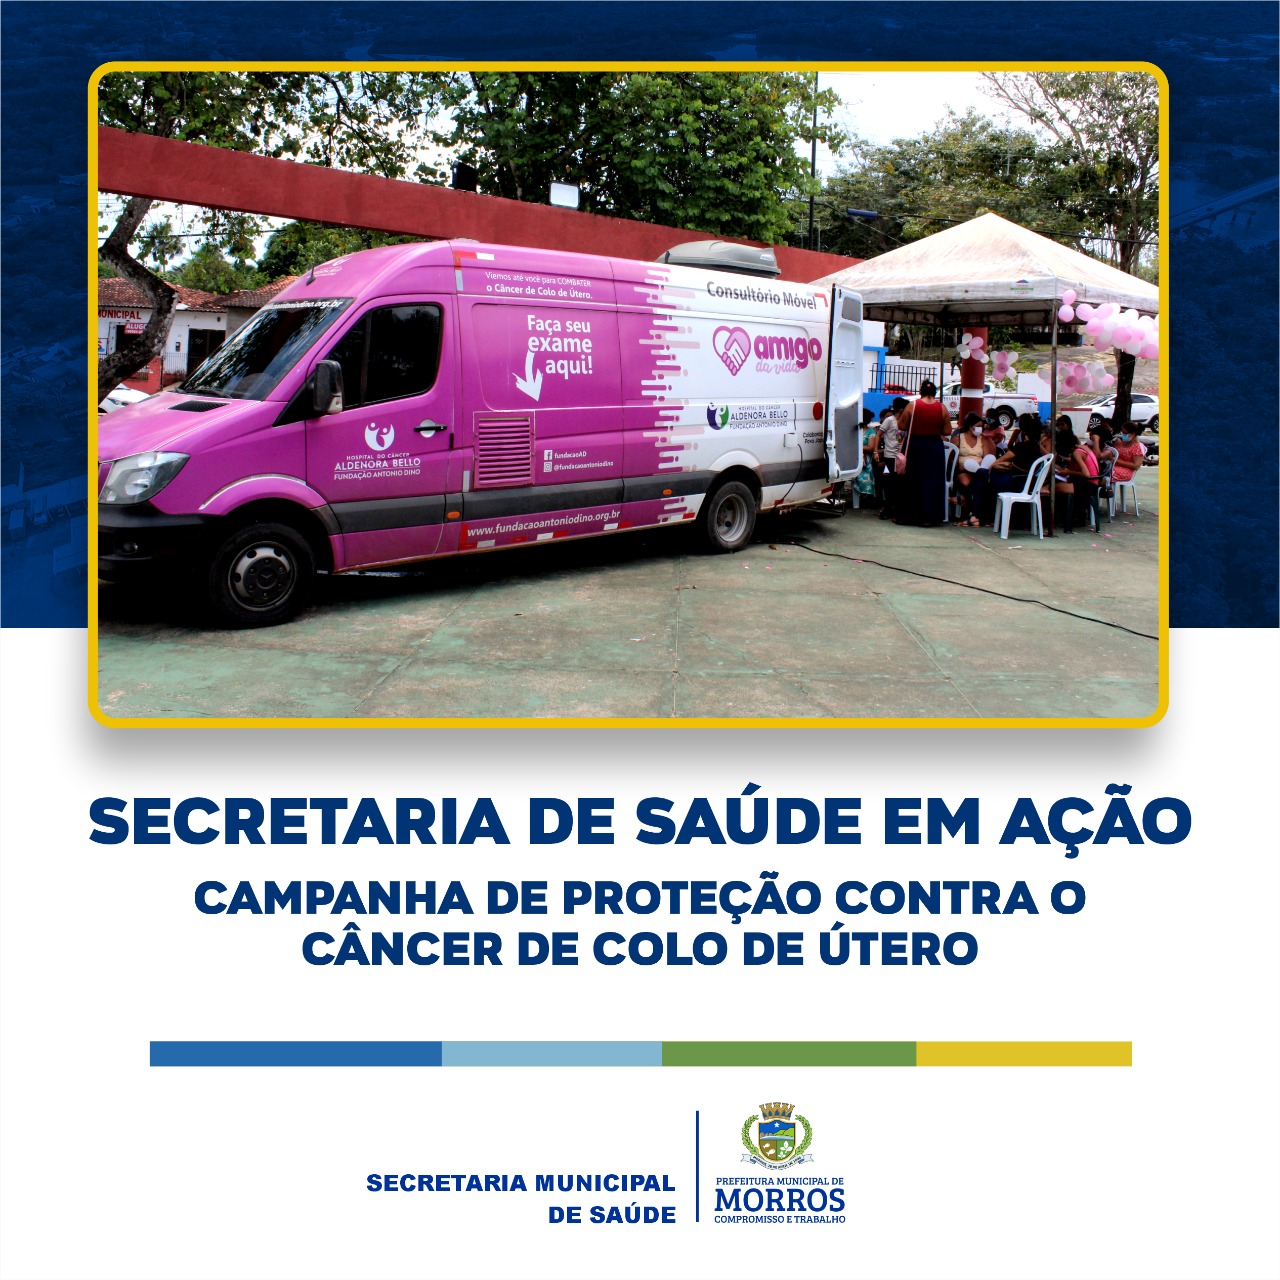 campanha de prevenção contra o câncer de colo de útero